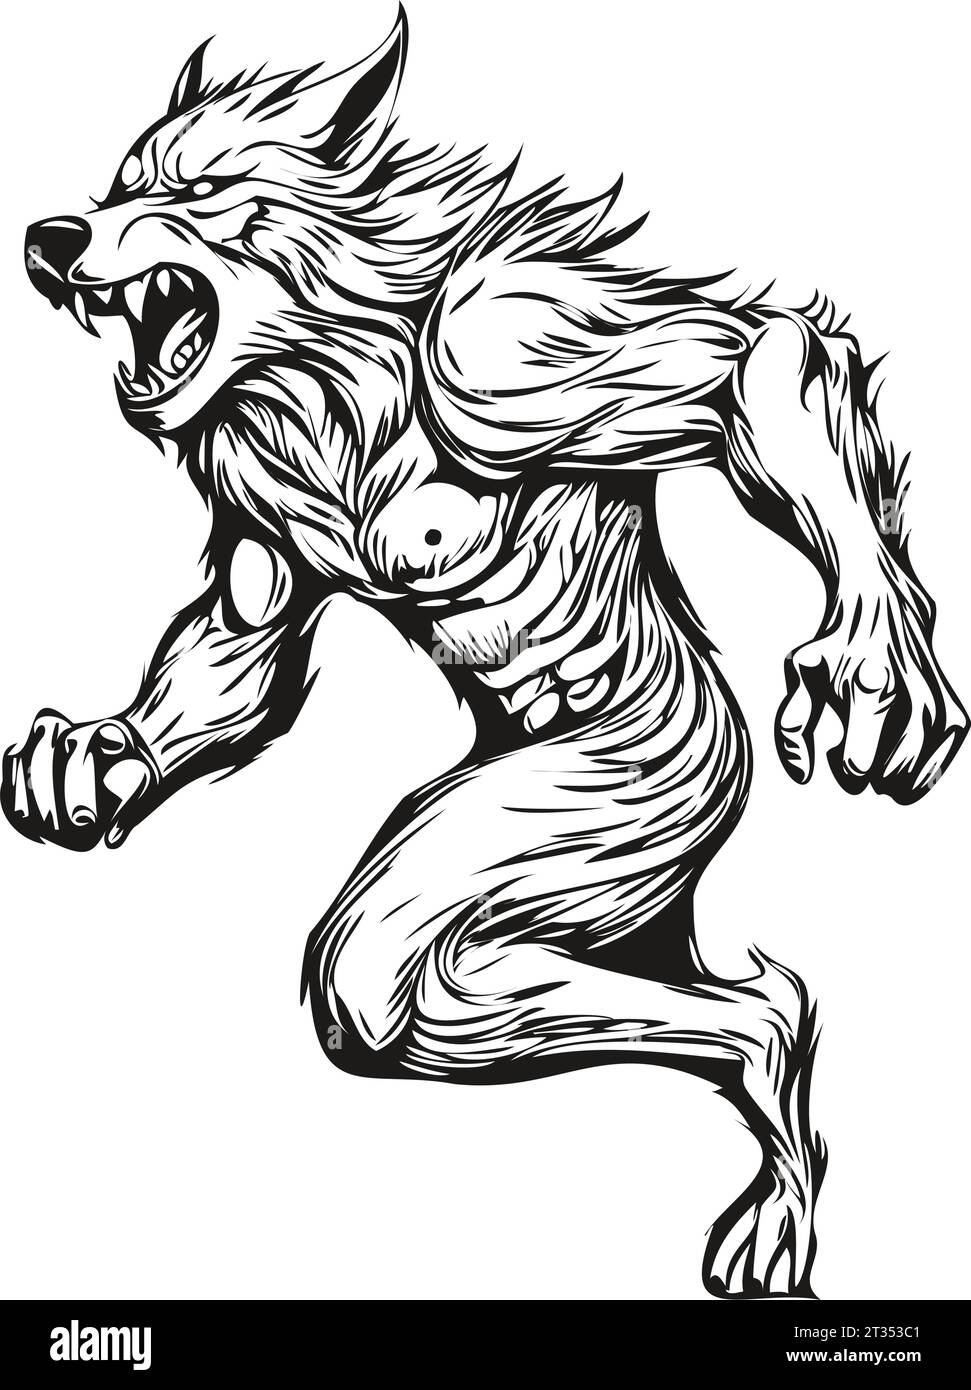 Malveillant dessiné à la main Halloween reflet d'un loup-garou hantant, image isolée d'un loup lycanthrope loup sur une couche transparente, peut être utilisé comme un eng Illustration de Vecteur